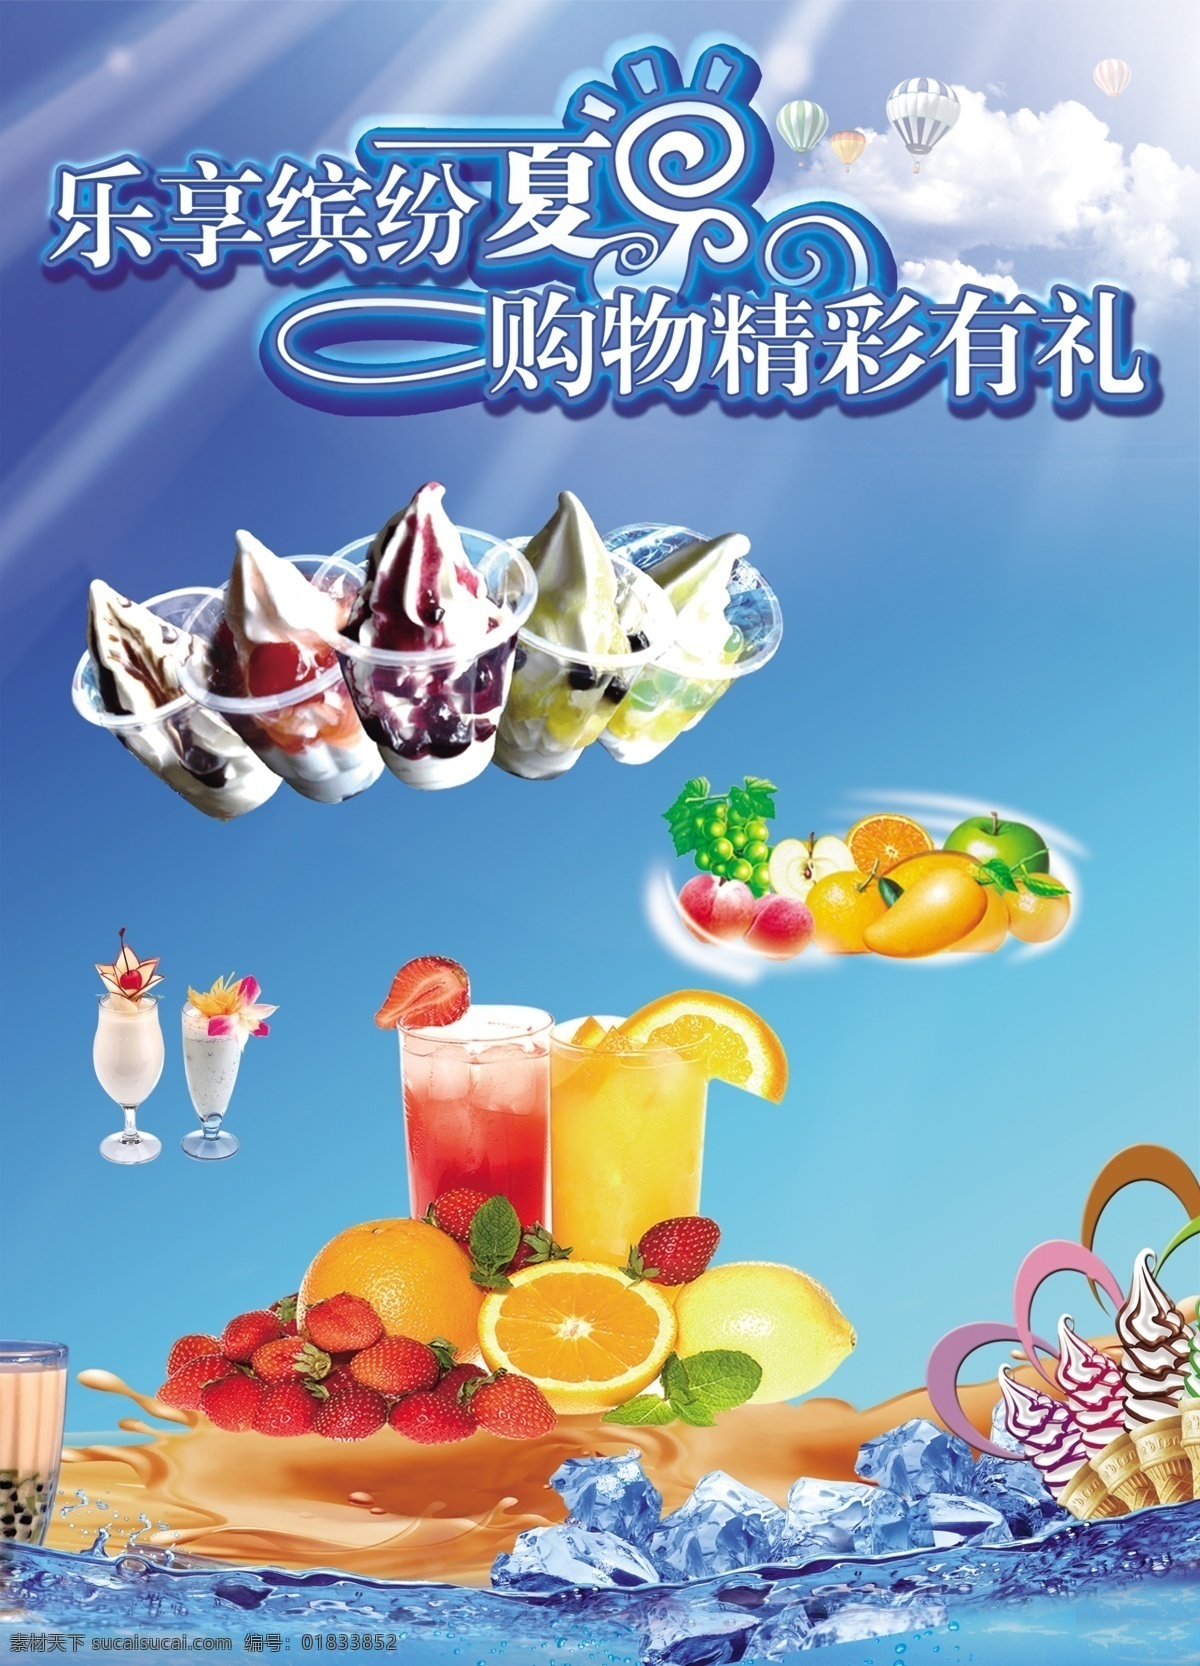 夏季冰品 清凉一夏 圣代 奶茶 沙冰 冰淇淋 广告设计模板 源文件